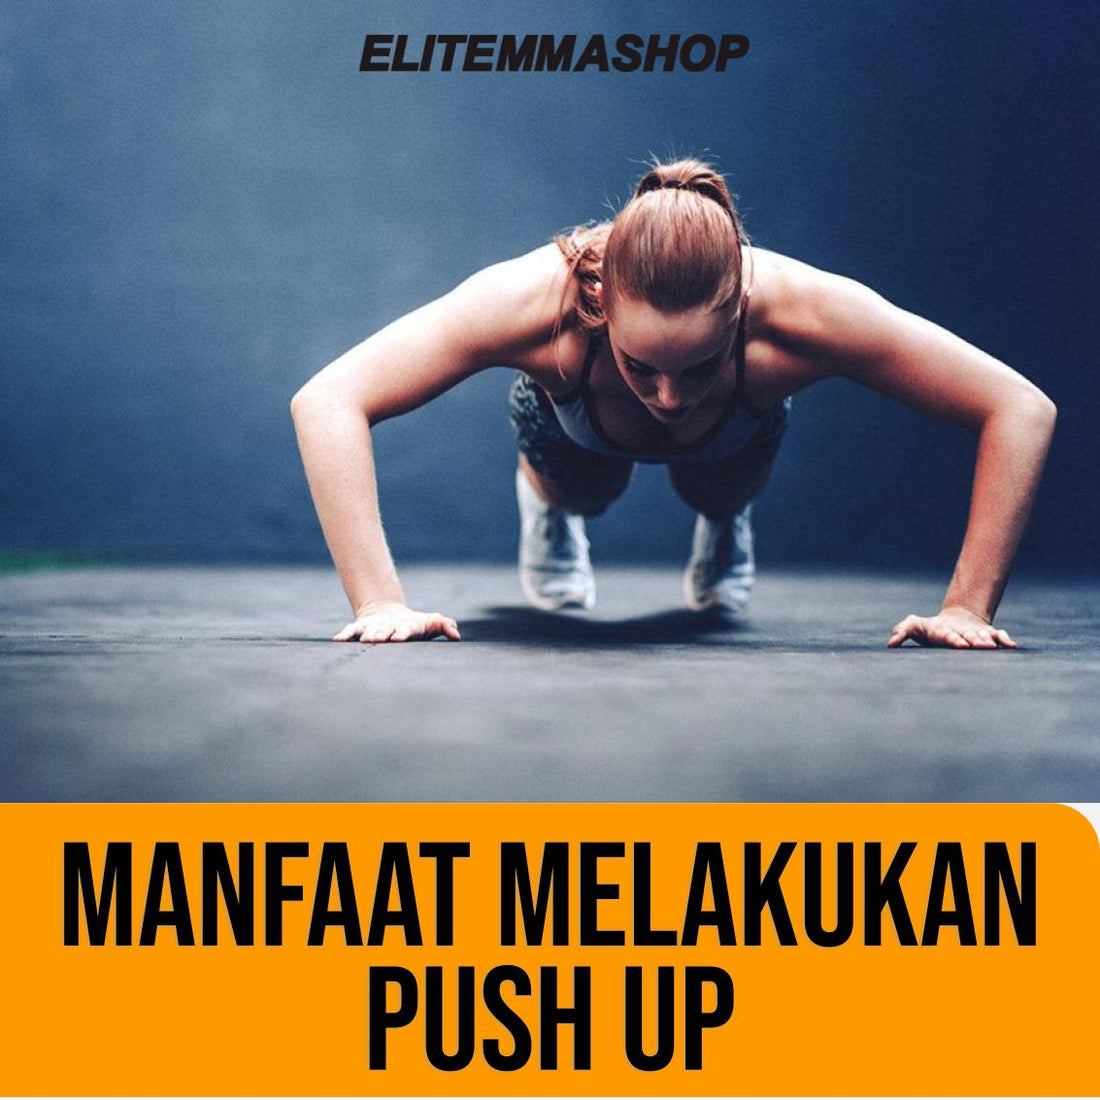 Manfaat melakukan push up untuk kesehatan tubuh